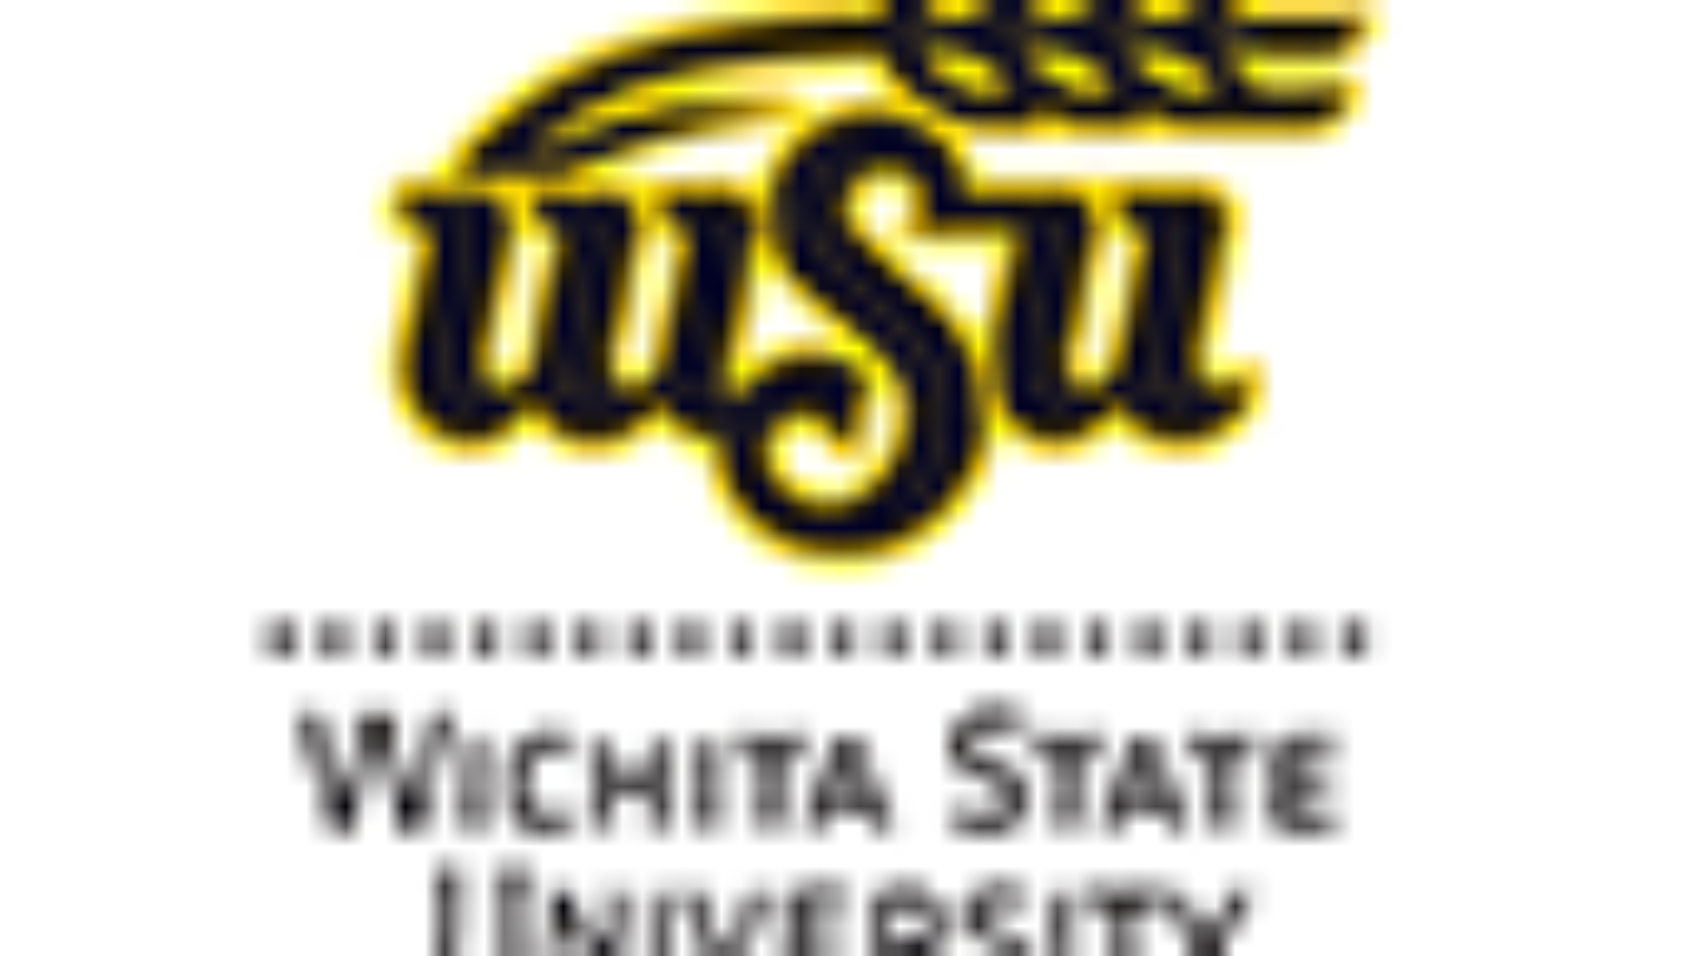 Wichita-State-University